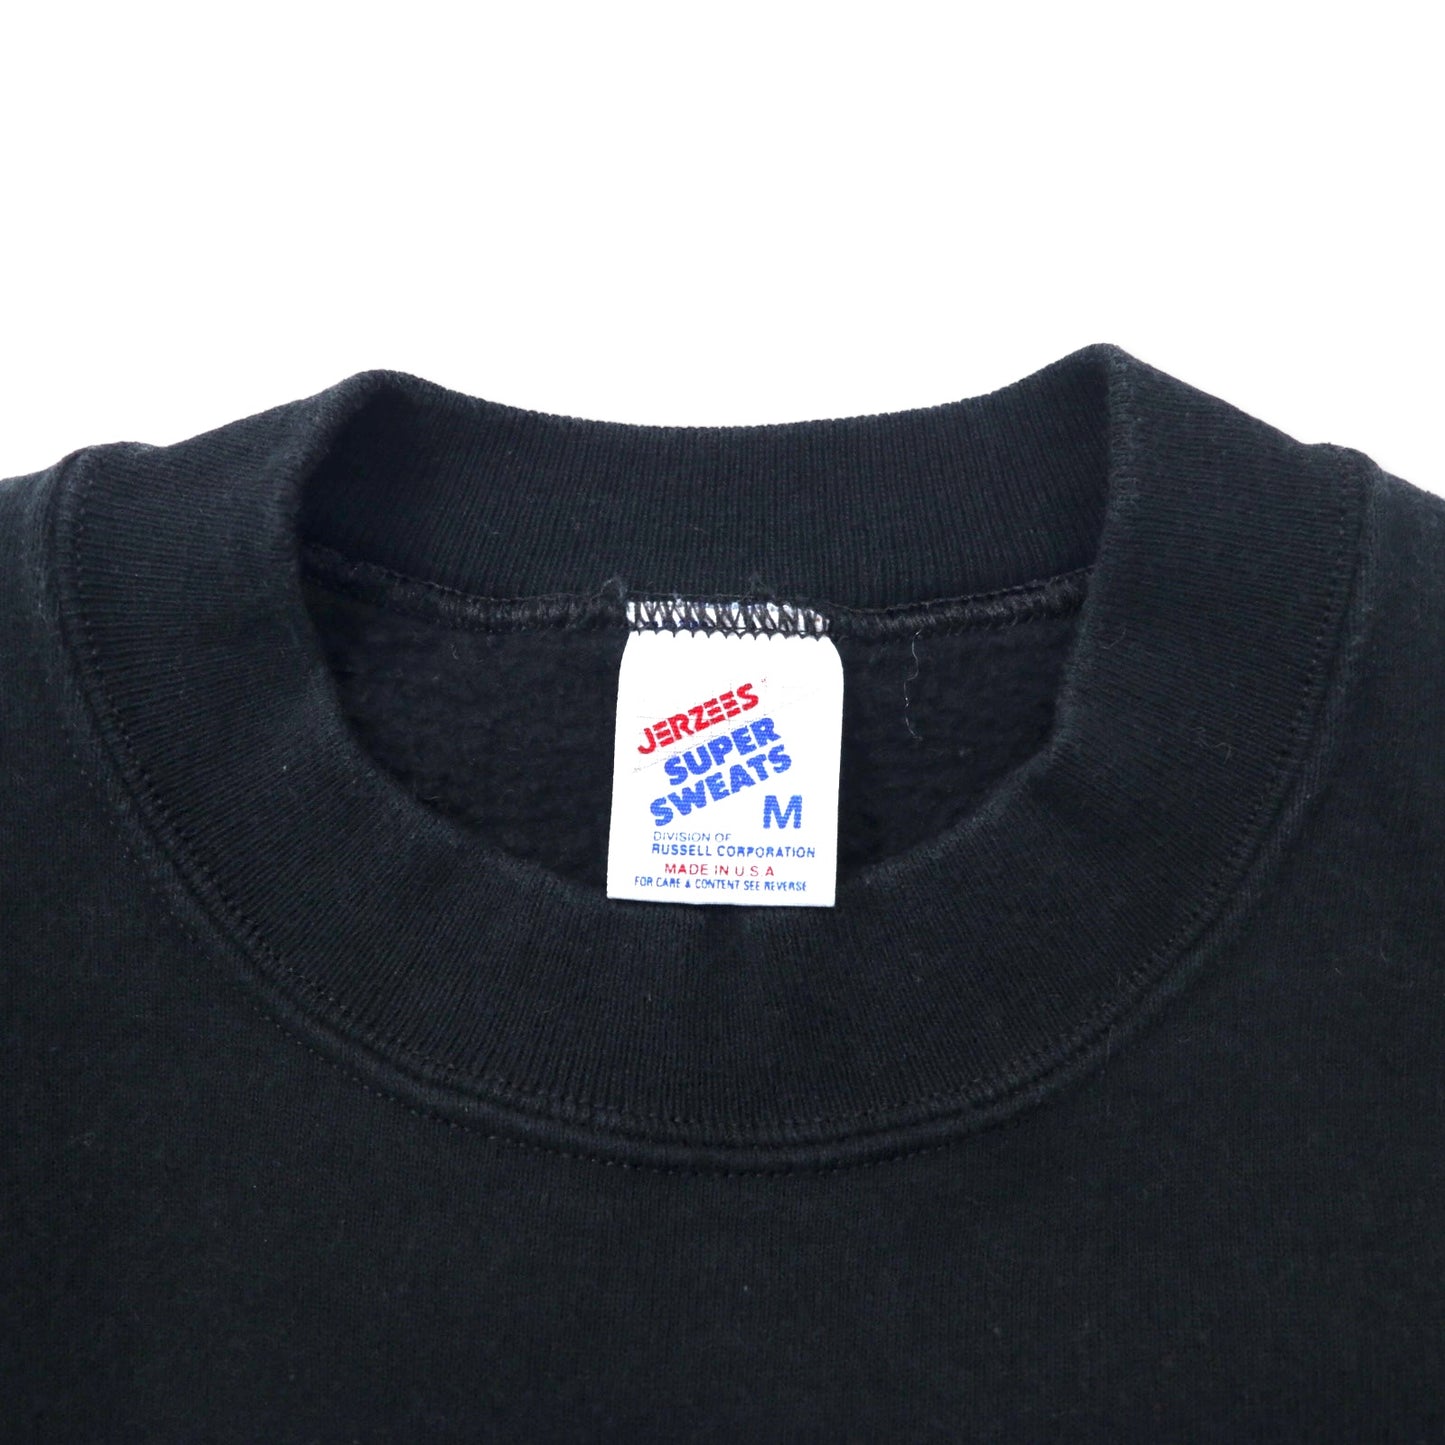 JERZEES USA製 90年代 SUPER SWEATS クルーネック スウェット M ブラック コットン 裏起毛 DUNELAND SOCCER ワンポイント刺繍